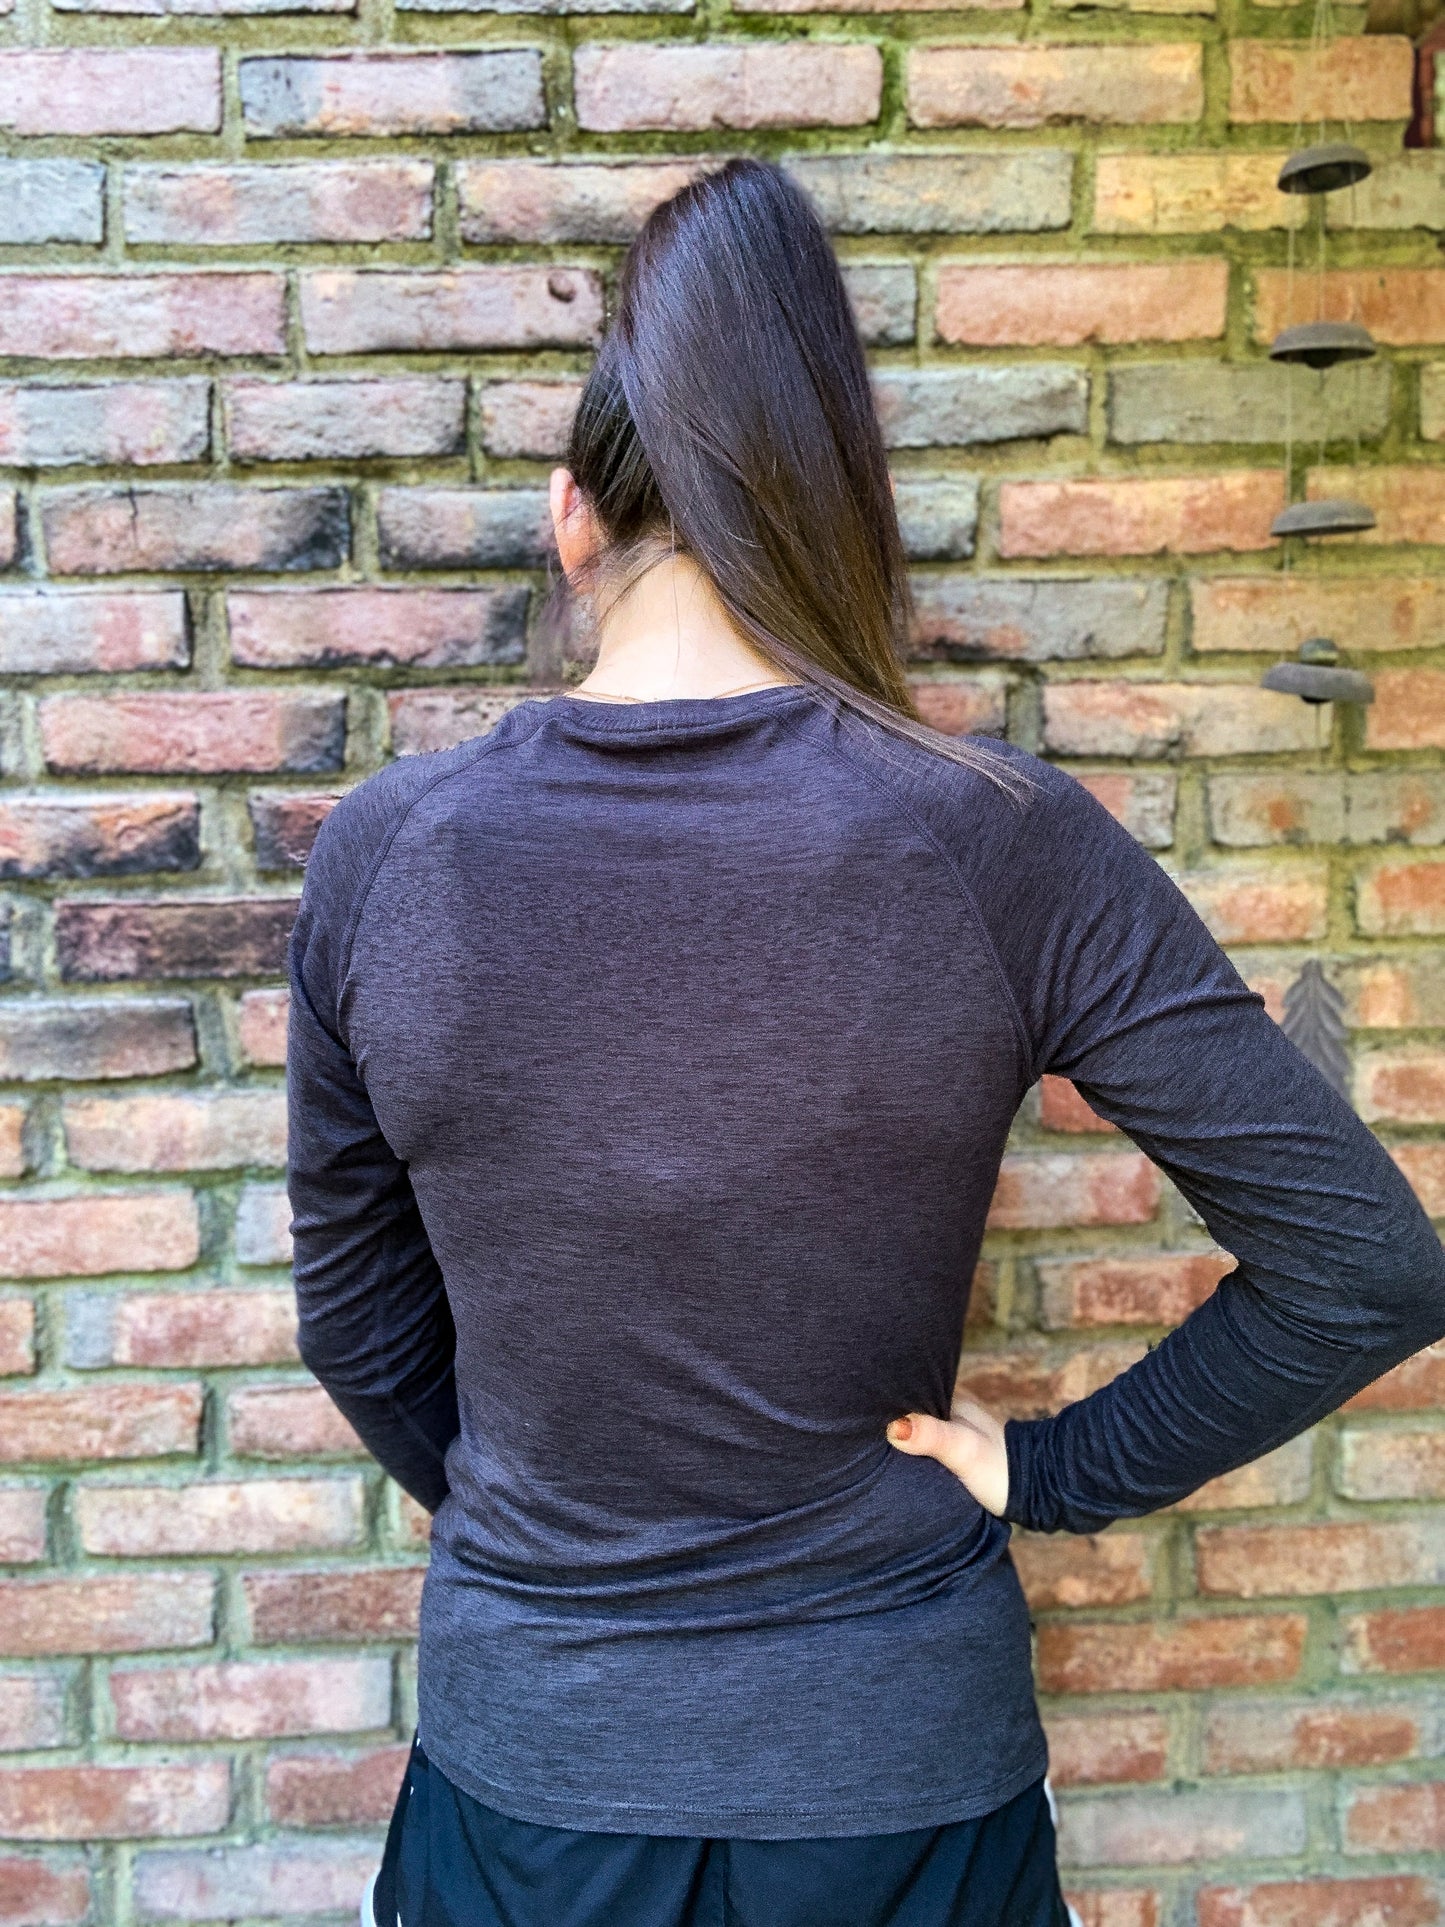 Outdoors Inc. Women's Long Sleeve Performance Tech T-Shirt